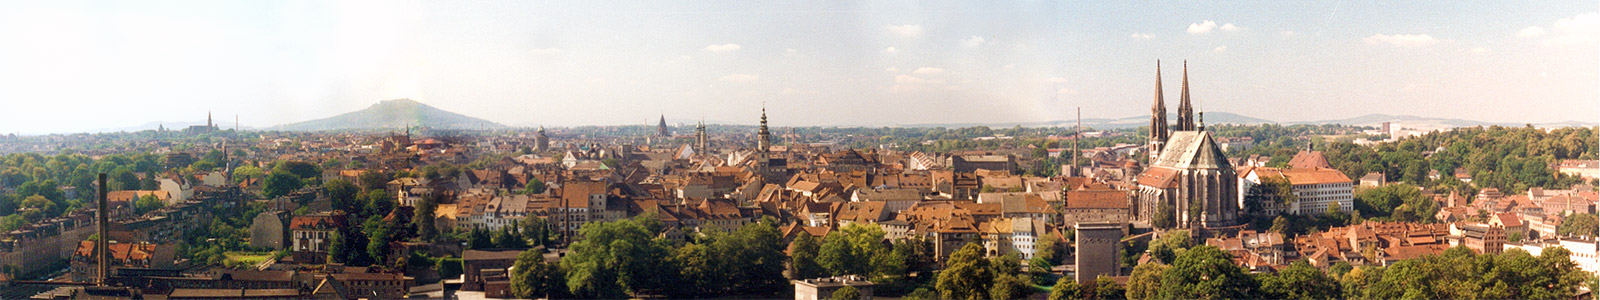 Görlitz Panorama